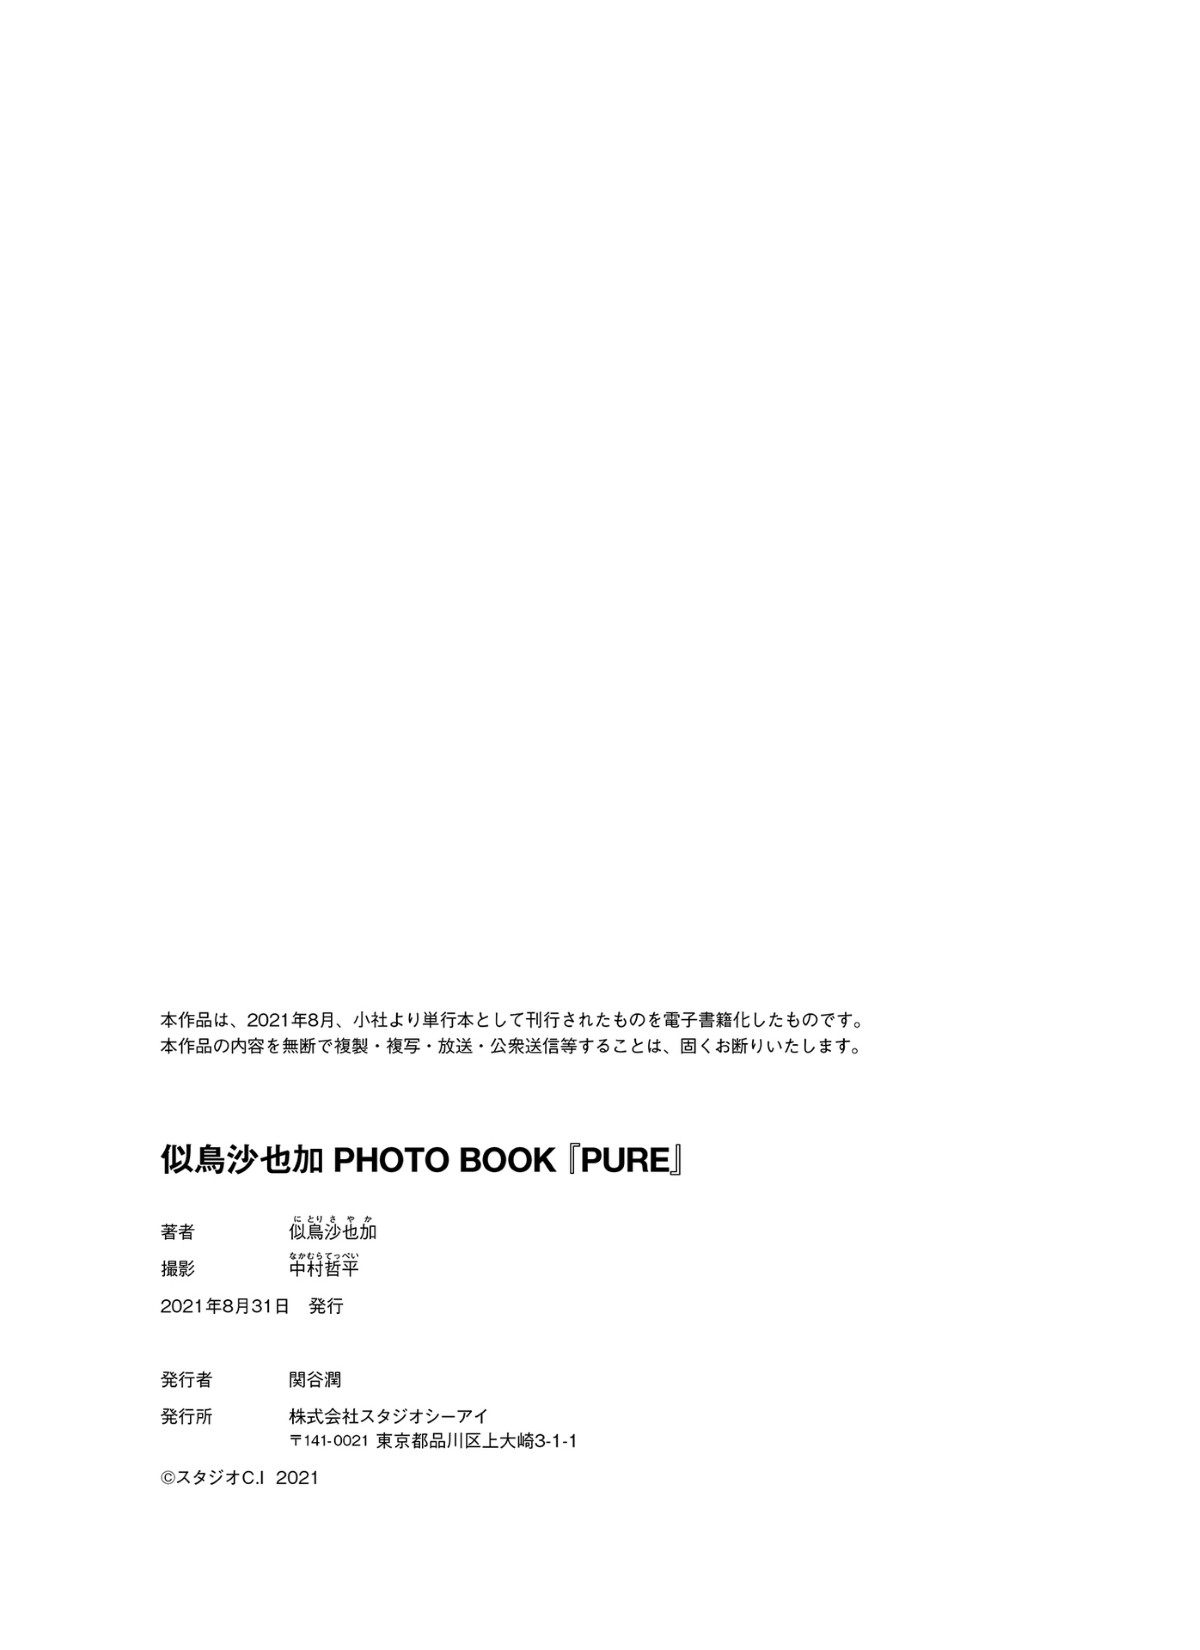 Photobook 2021 08 31 Sayaka Nitori 似鳥沙也加 Pure 0081 2255148491.jpg